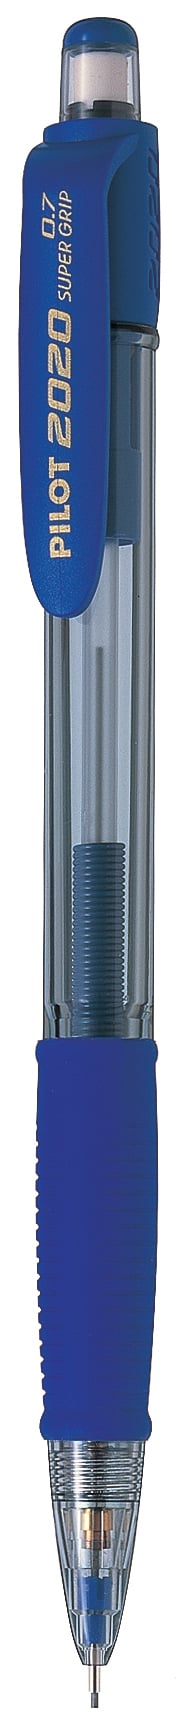 Stiftpenna Pilot Super Grip Shaker blå 0,7 13010004_2